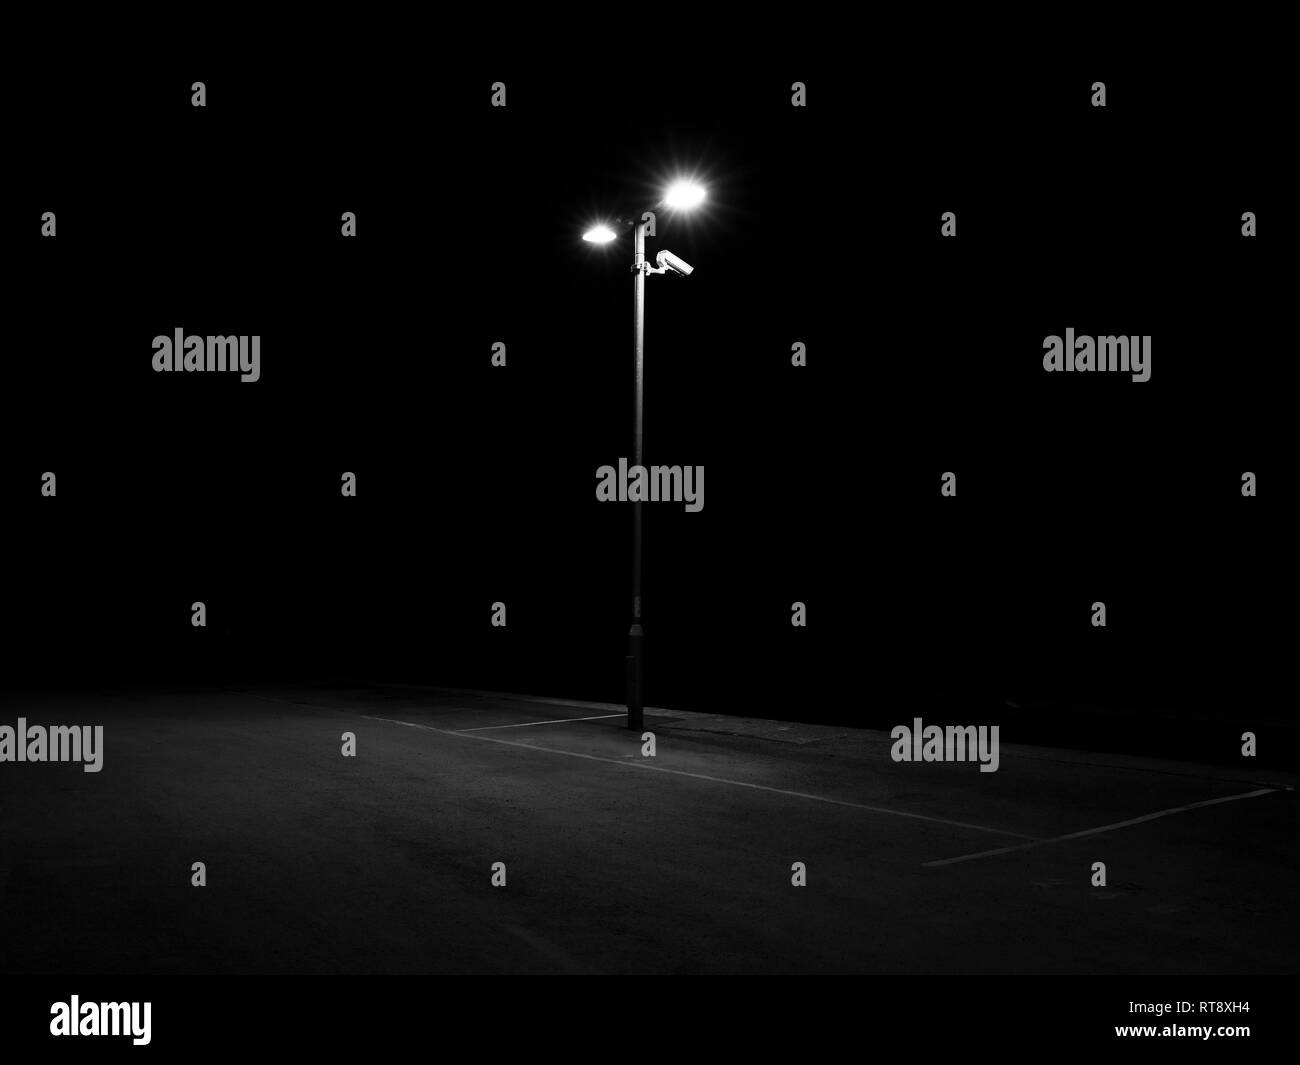 Lampadaire la nuit Banque d'images noir et blanc - Page 2 - Alamy